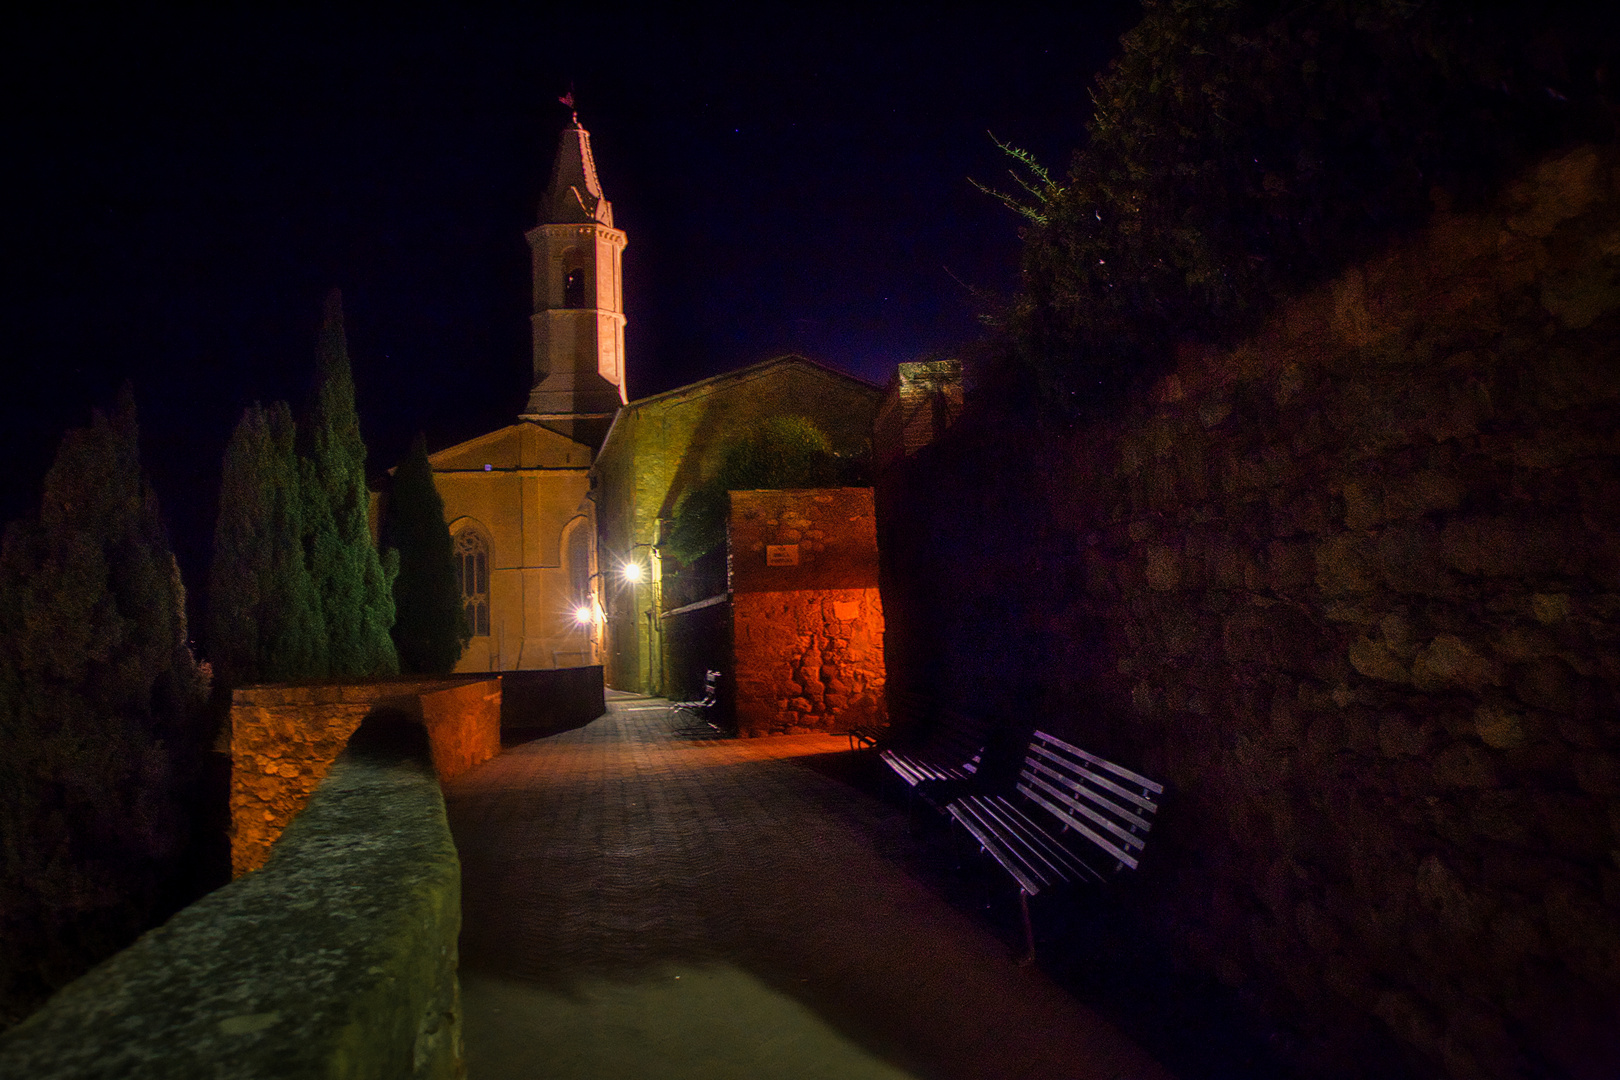 In der Nacht an der Stadtmauer von Pienza...